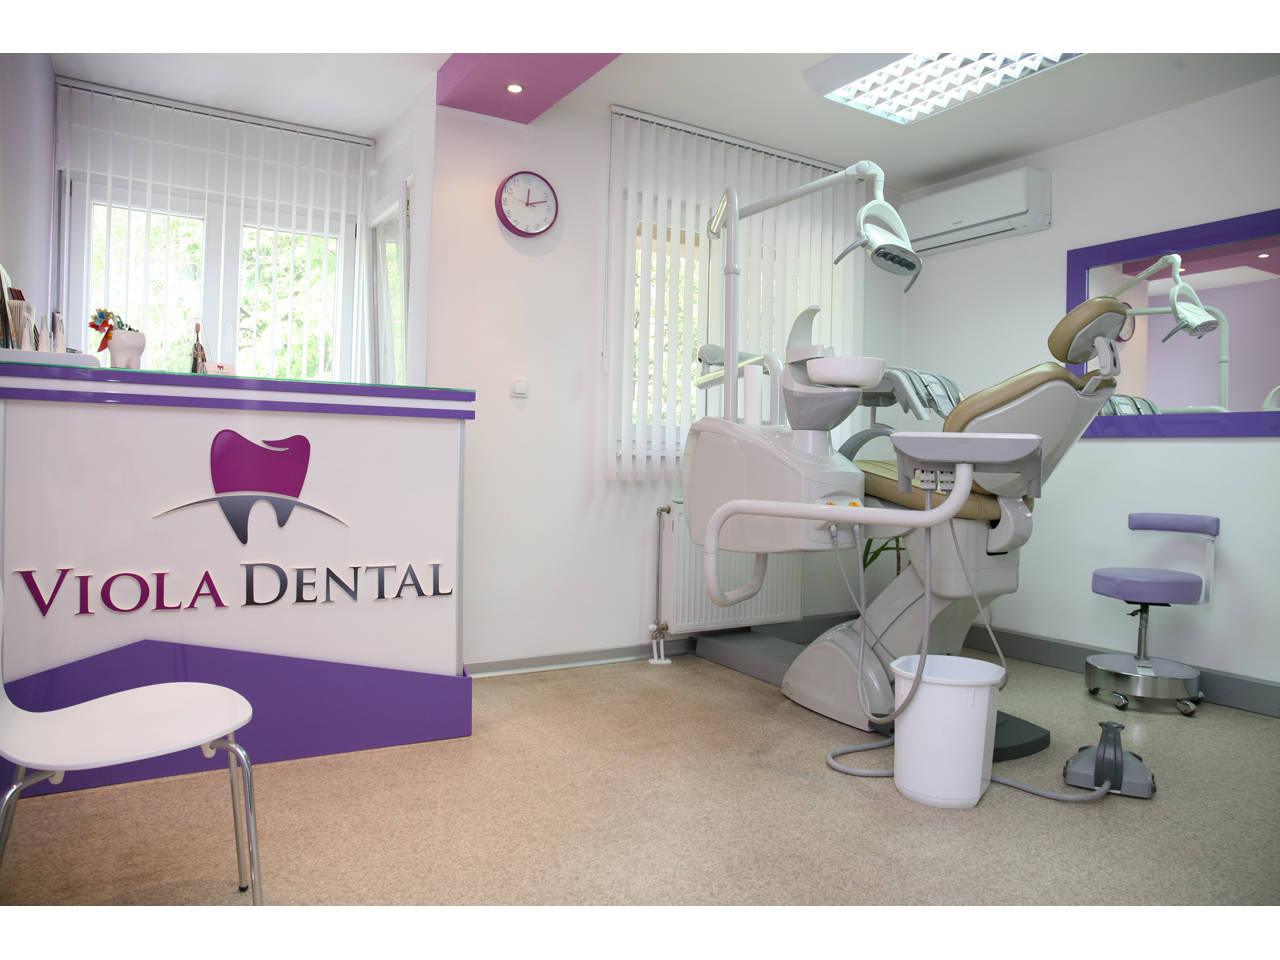 VIOLA DENTAL Dental surgery Beograd